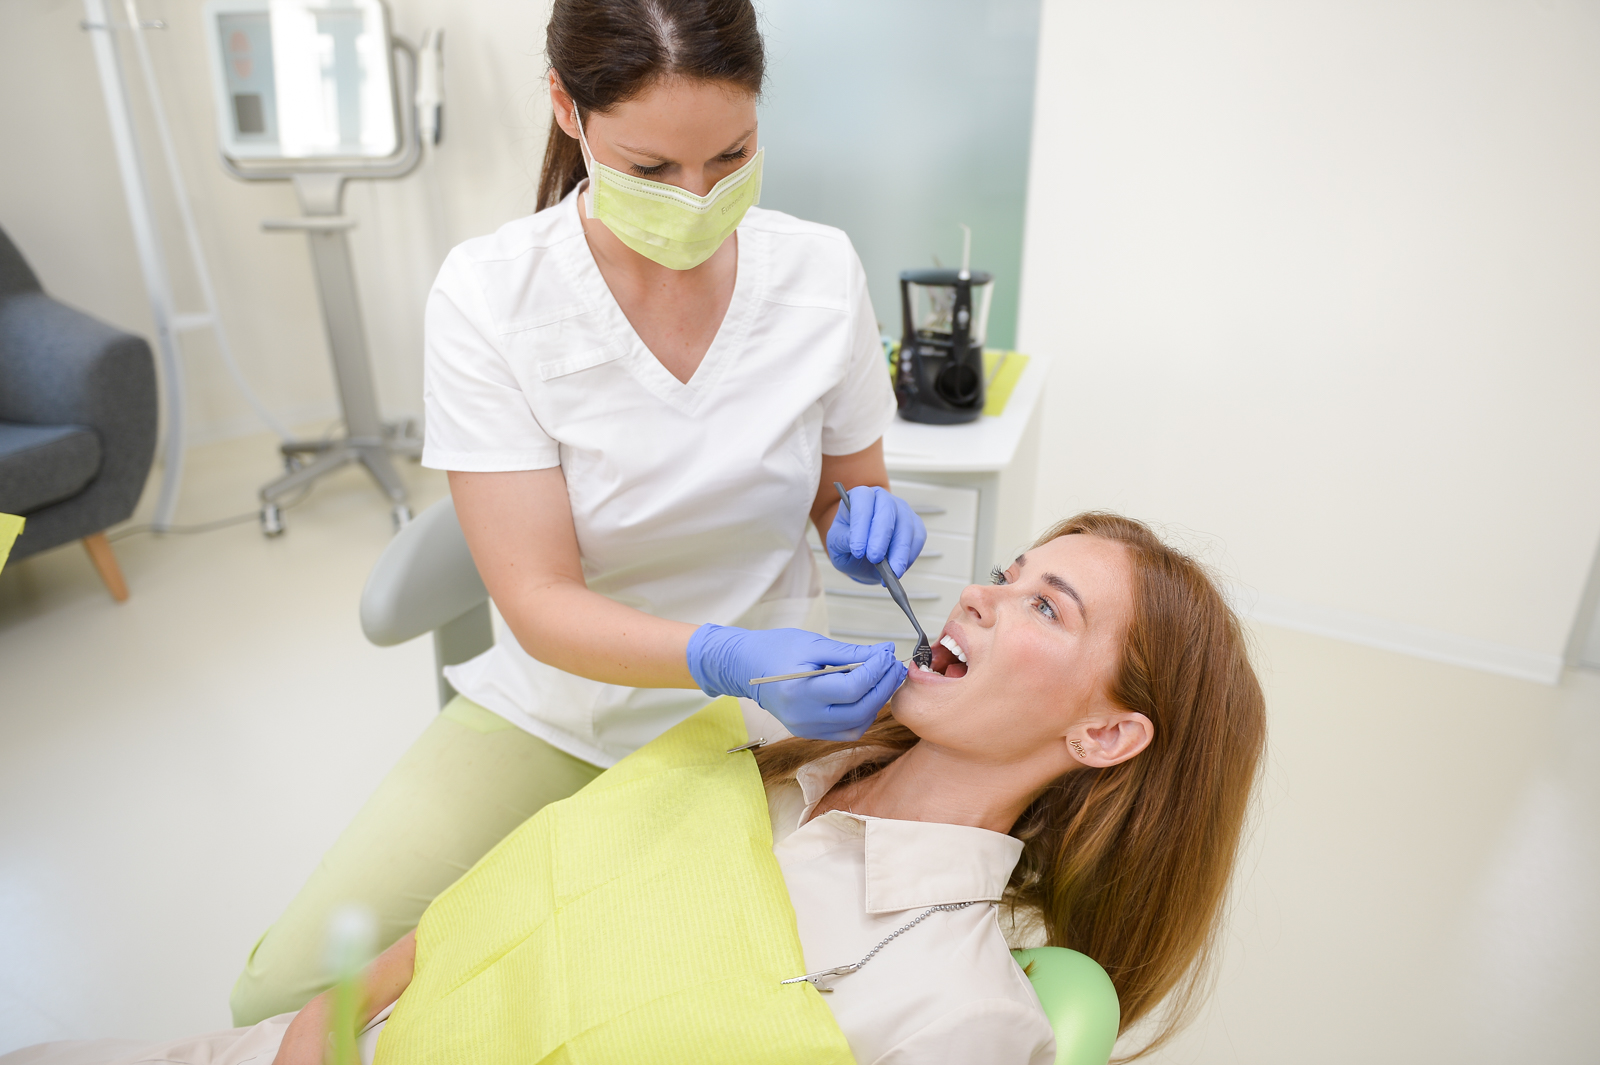 AKCIA: Dentálna hygiena vo Family Dental Care... najlepšia prevencia kazu!